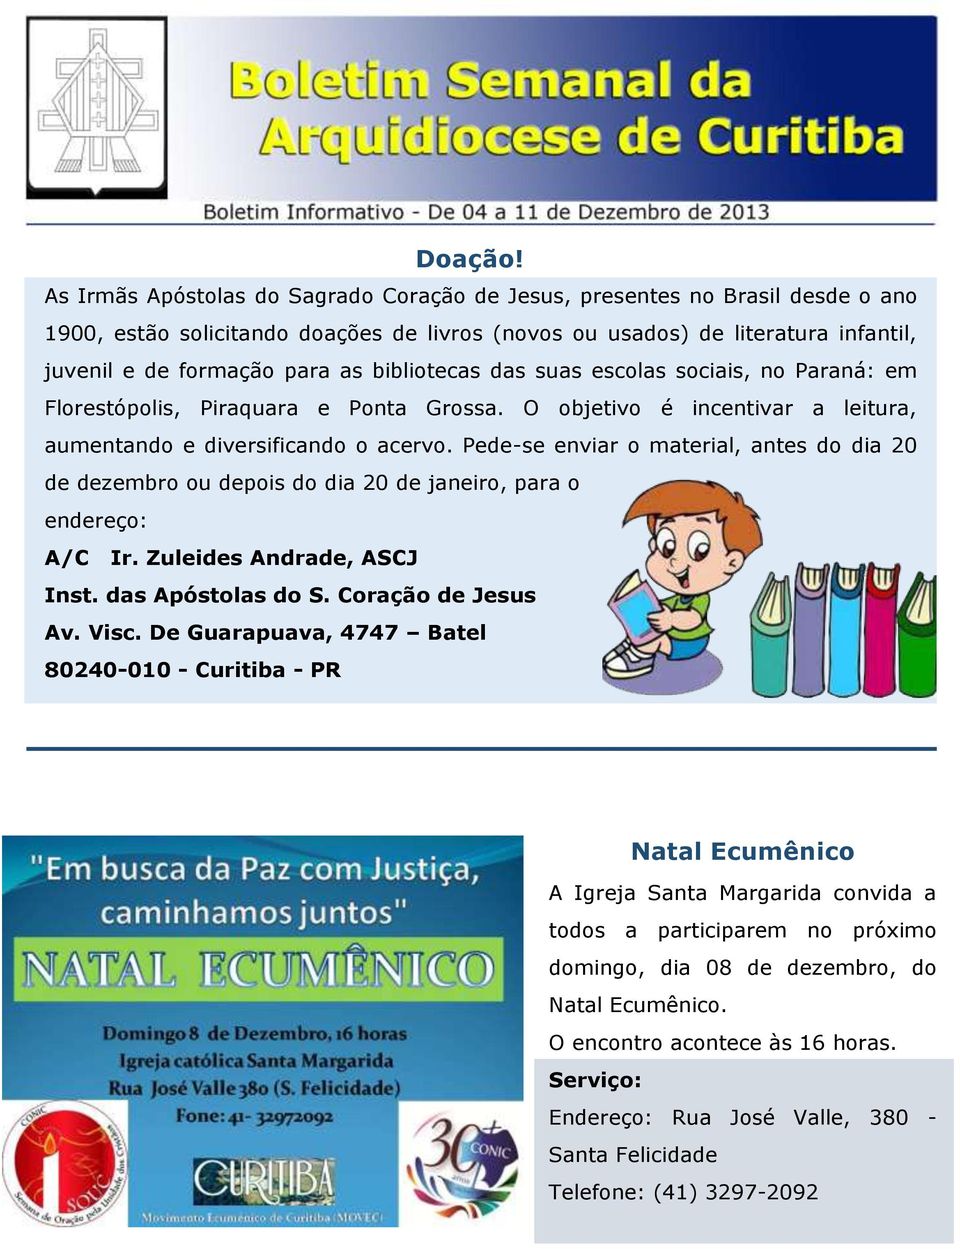 bibliotecas das suas escolas sociais, no Paraná: em Florestópolis, Piraquara e Ponta Grossa. O objetivo é incentivar a leitura, aumentando e diversificando o acervo.